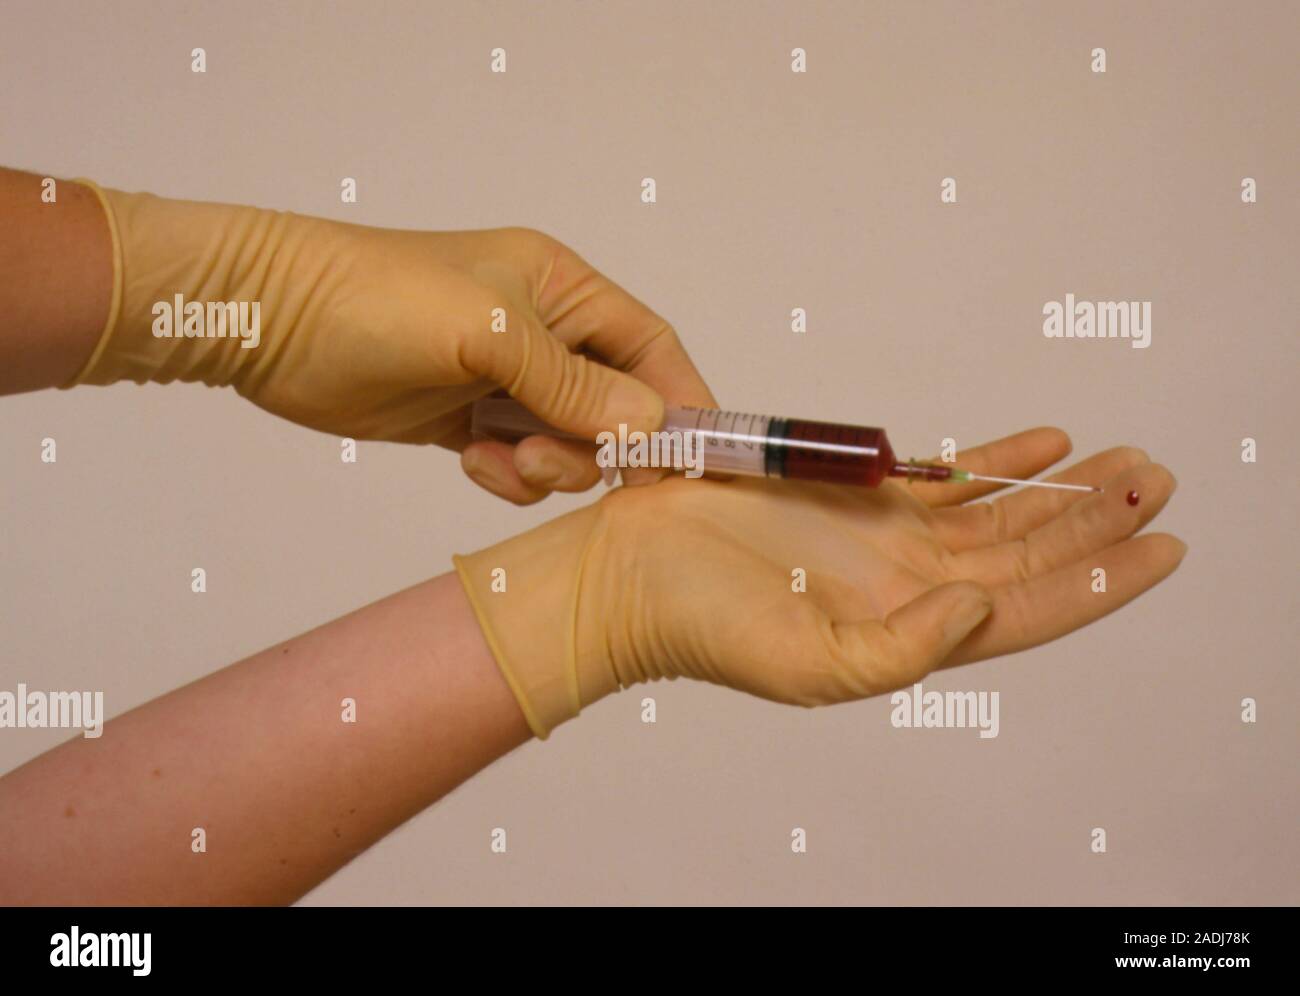 La toma de muestras de sangre de la infección. Mano enguantada en el dedo por la aguja de una jeringa usada para tomar una muestra de sangre venosa. A menos